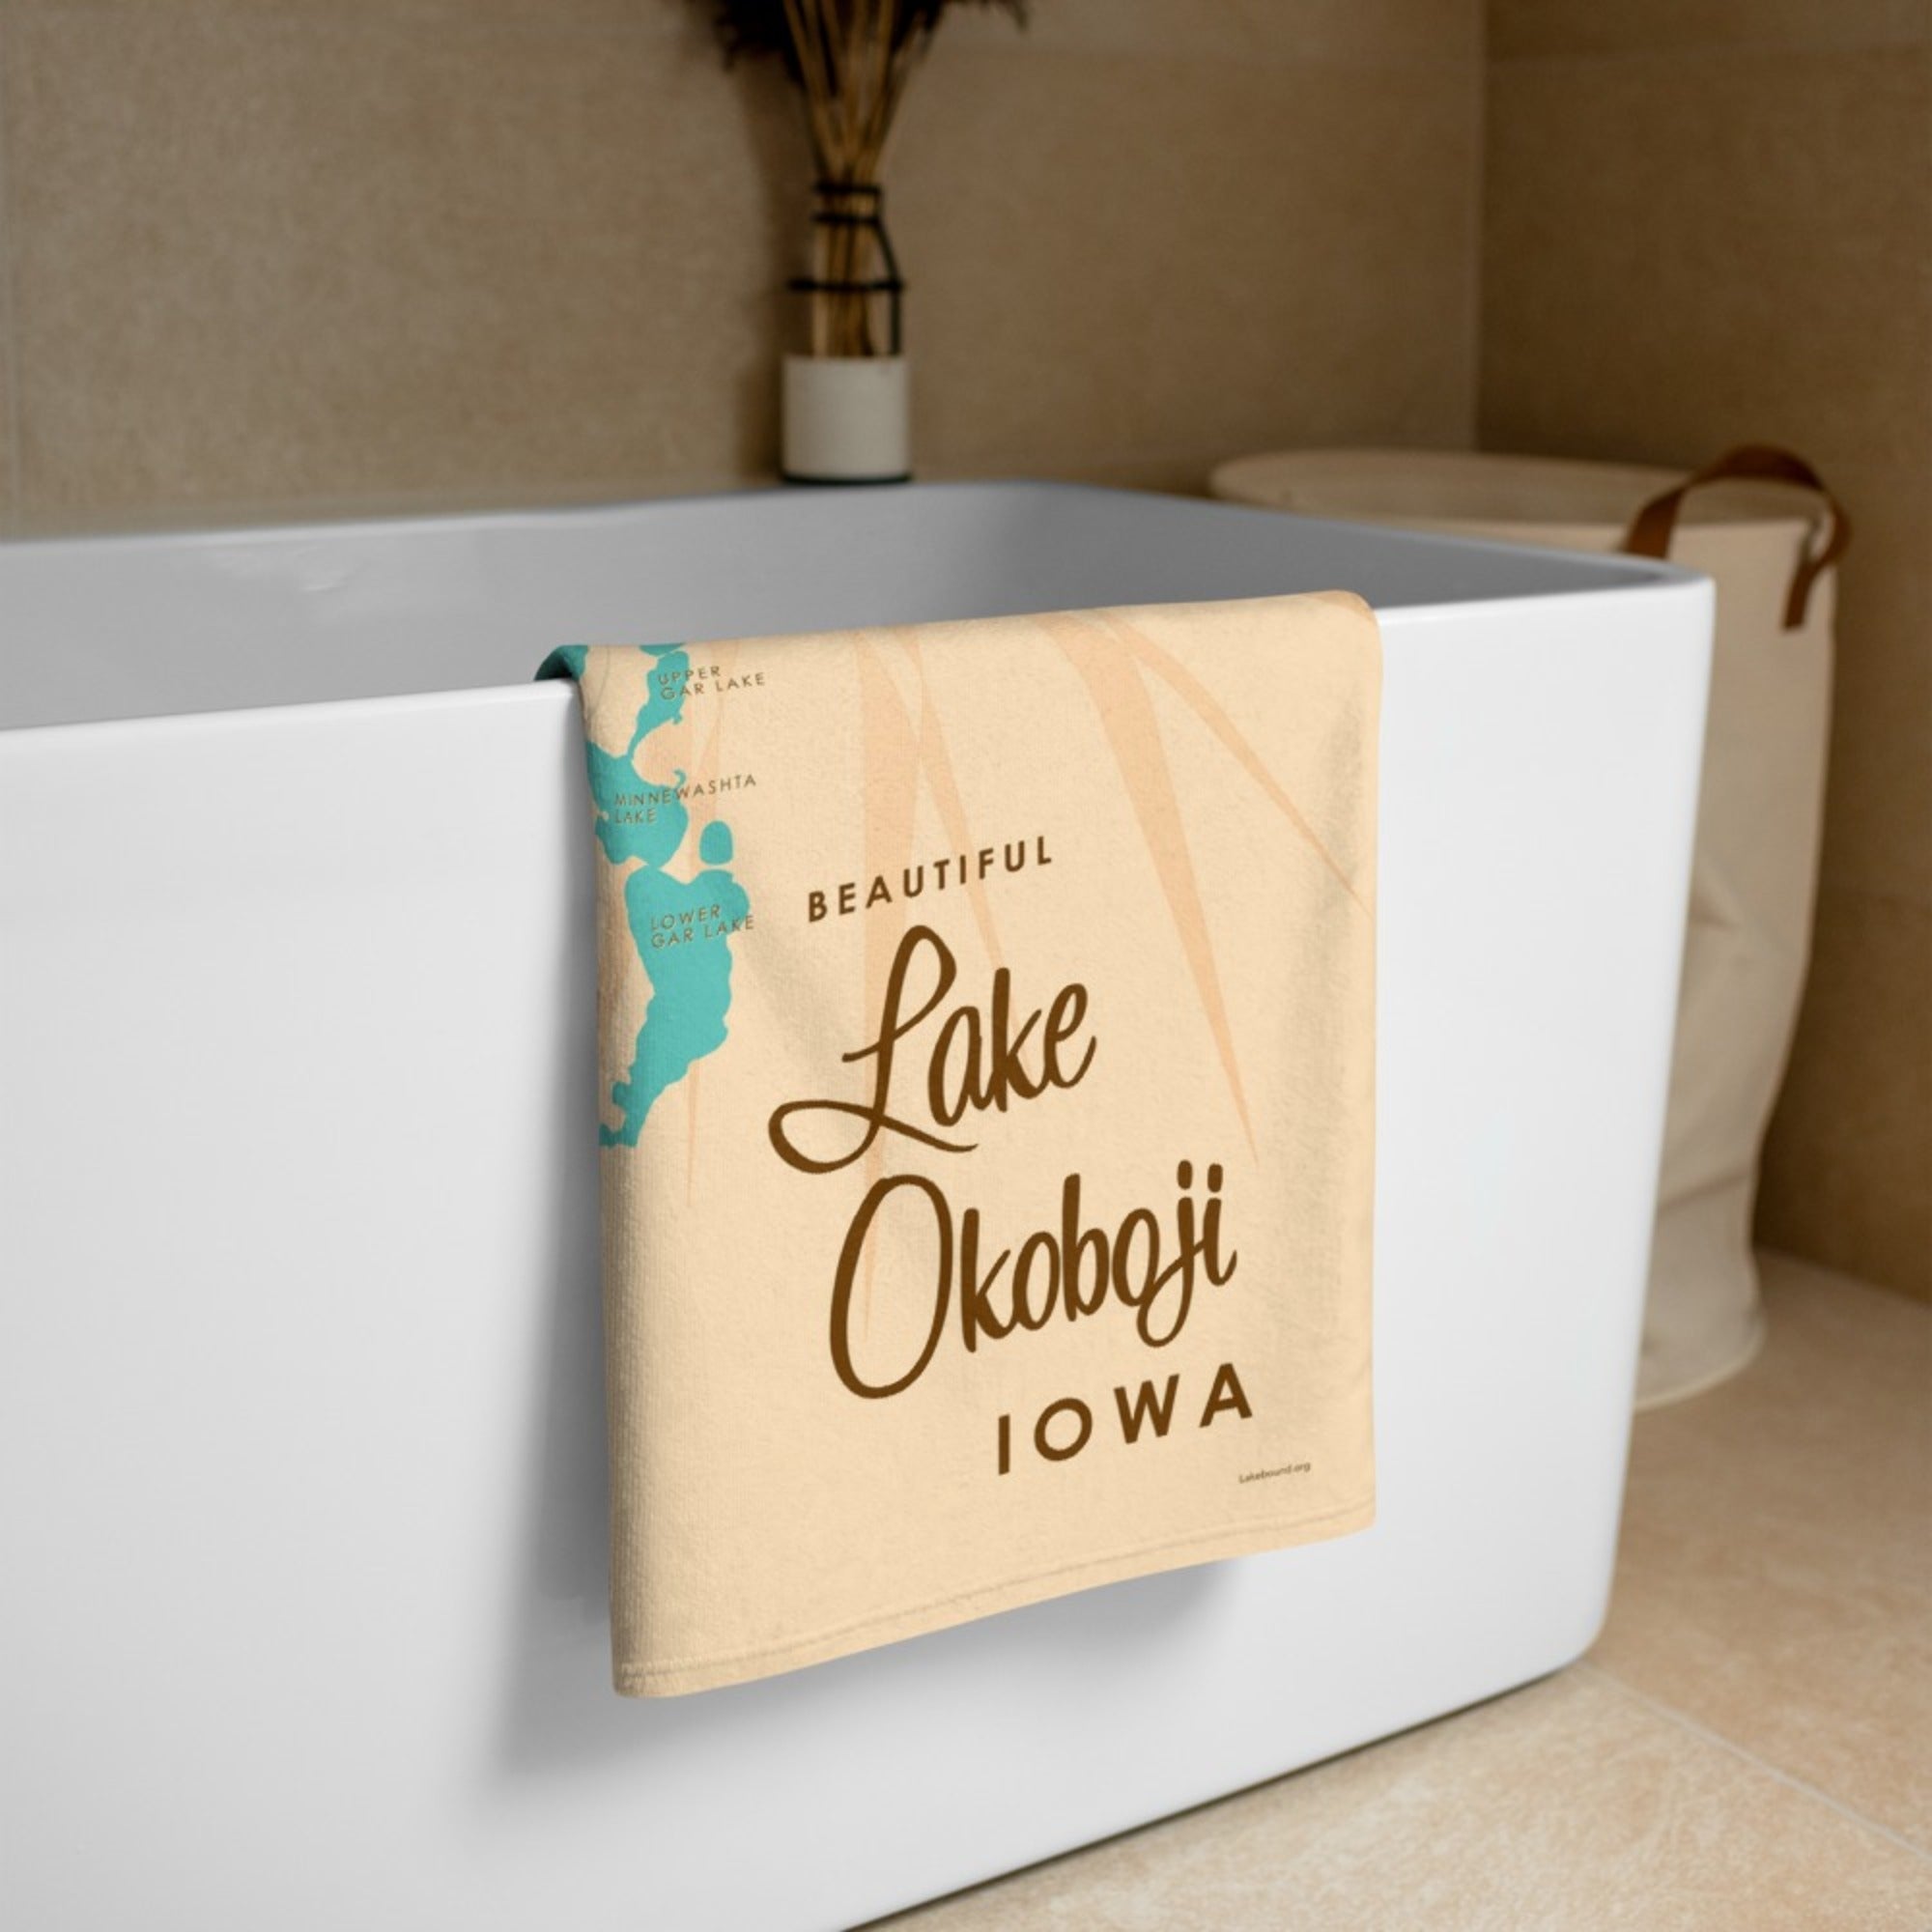 Lake Okoboji Iowa Beach Towel